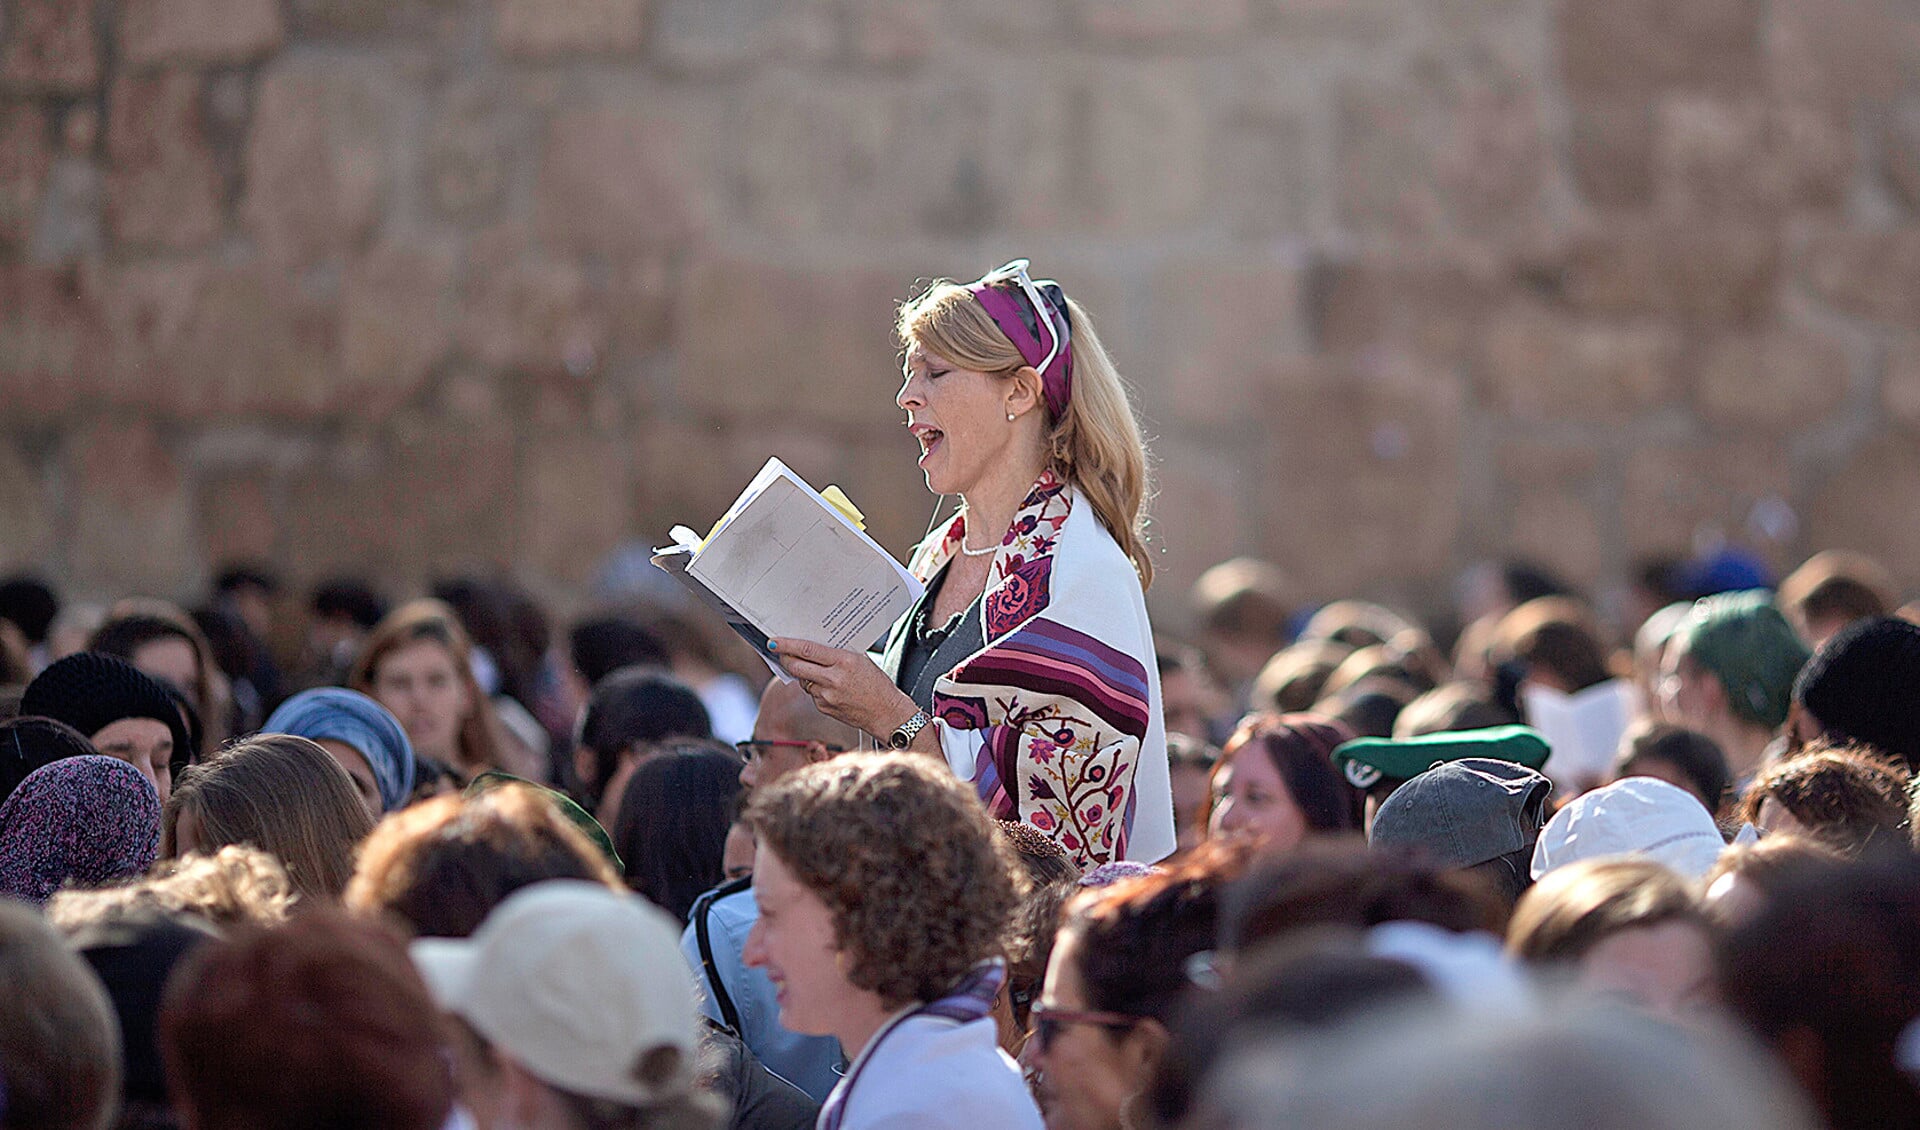 Een joodse vrouw met een gebedsmantel om bidt hardop bij de Klaagmuur in Jeruzalem. Orthodoxe joden zijn van mening dat dit in strijd is met de joodse wetgeving.